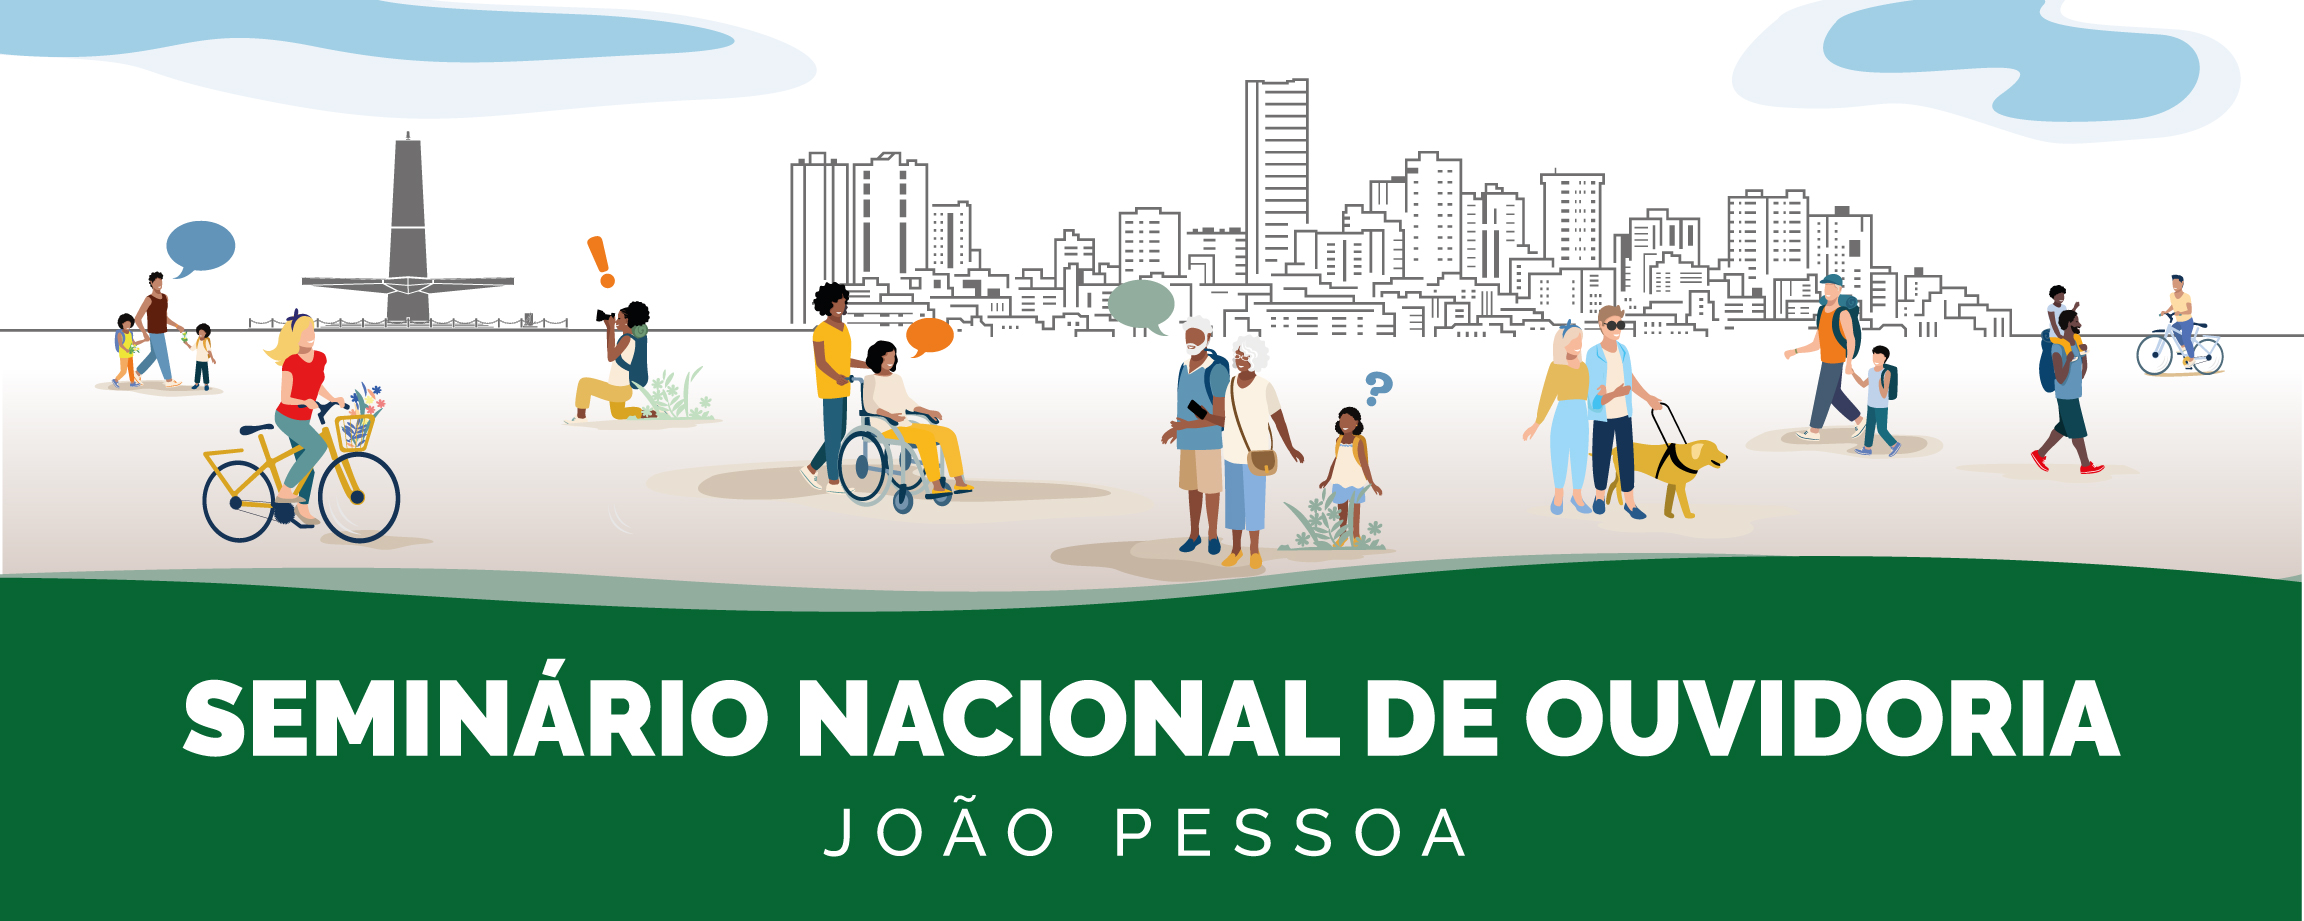 Evento ocorrerá nos dias 04 e 05 de junho em João Pessoa/PB